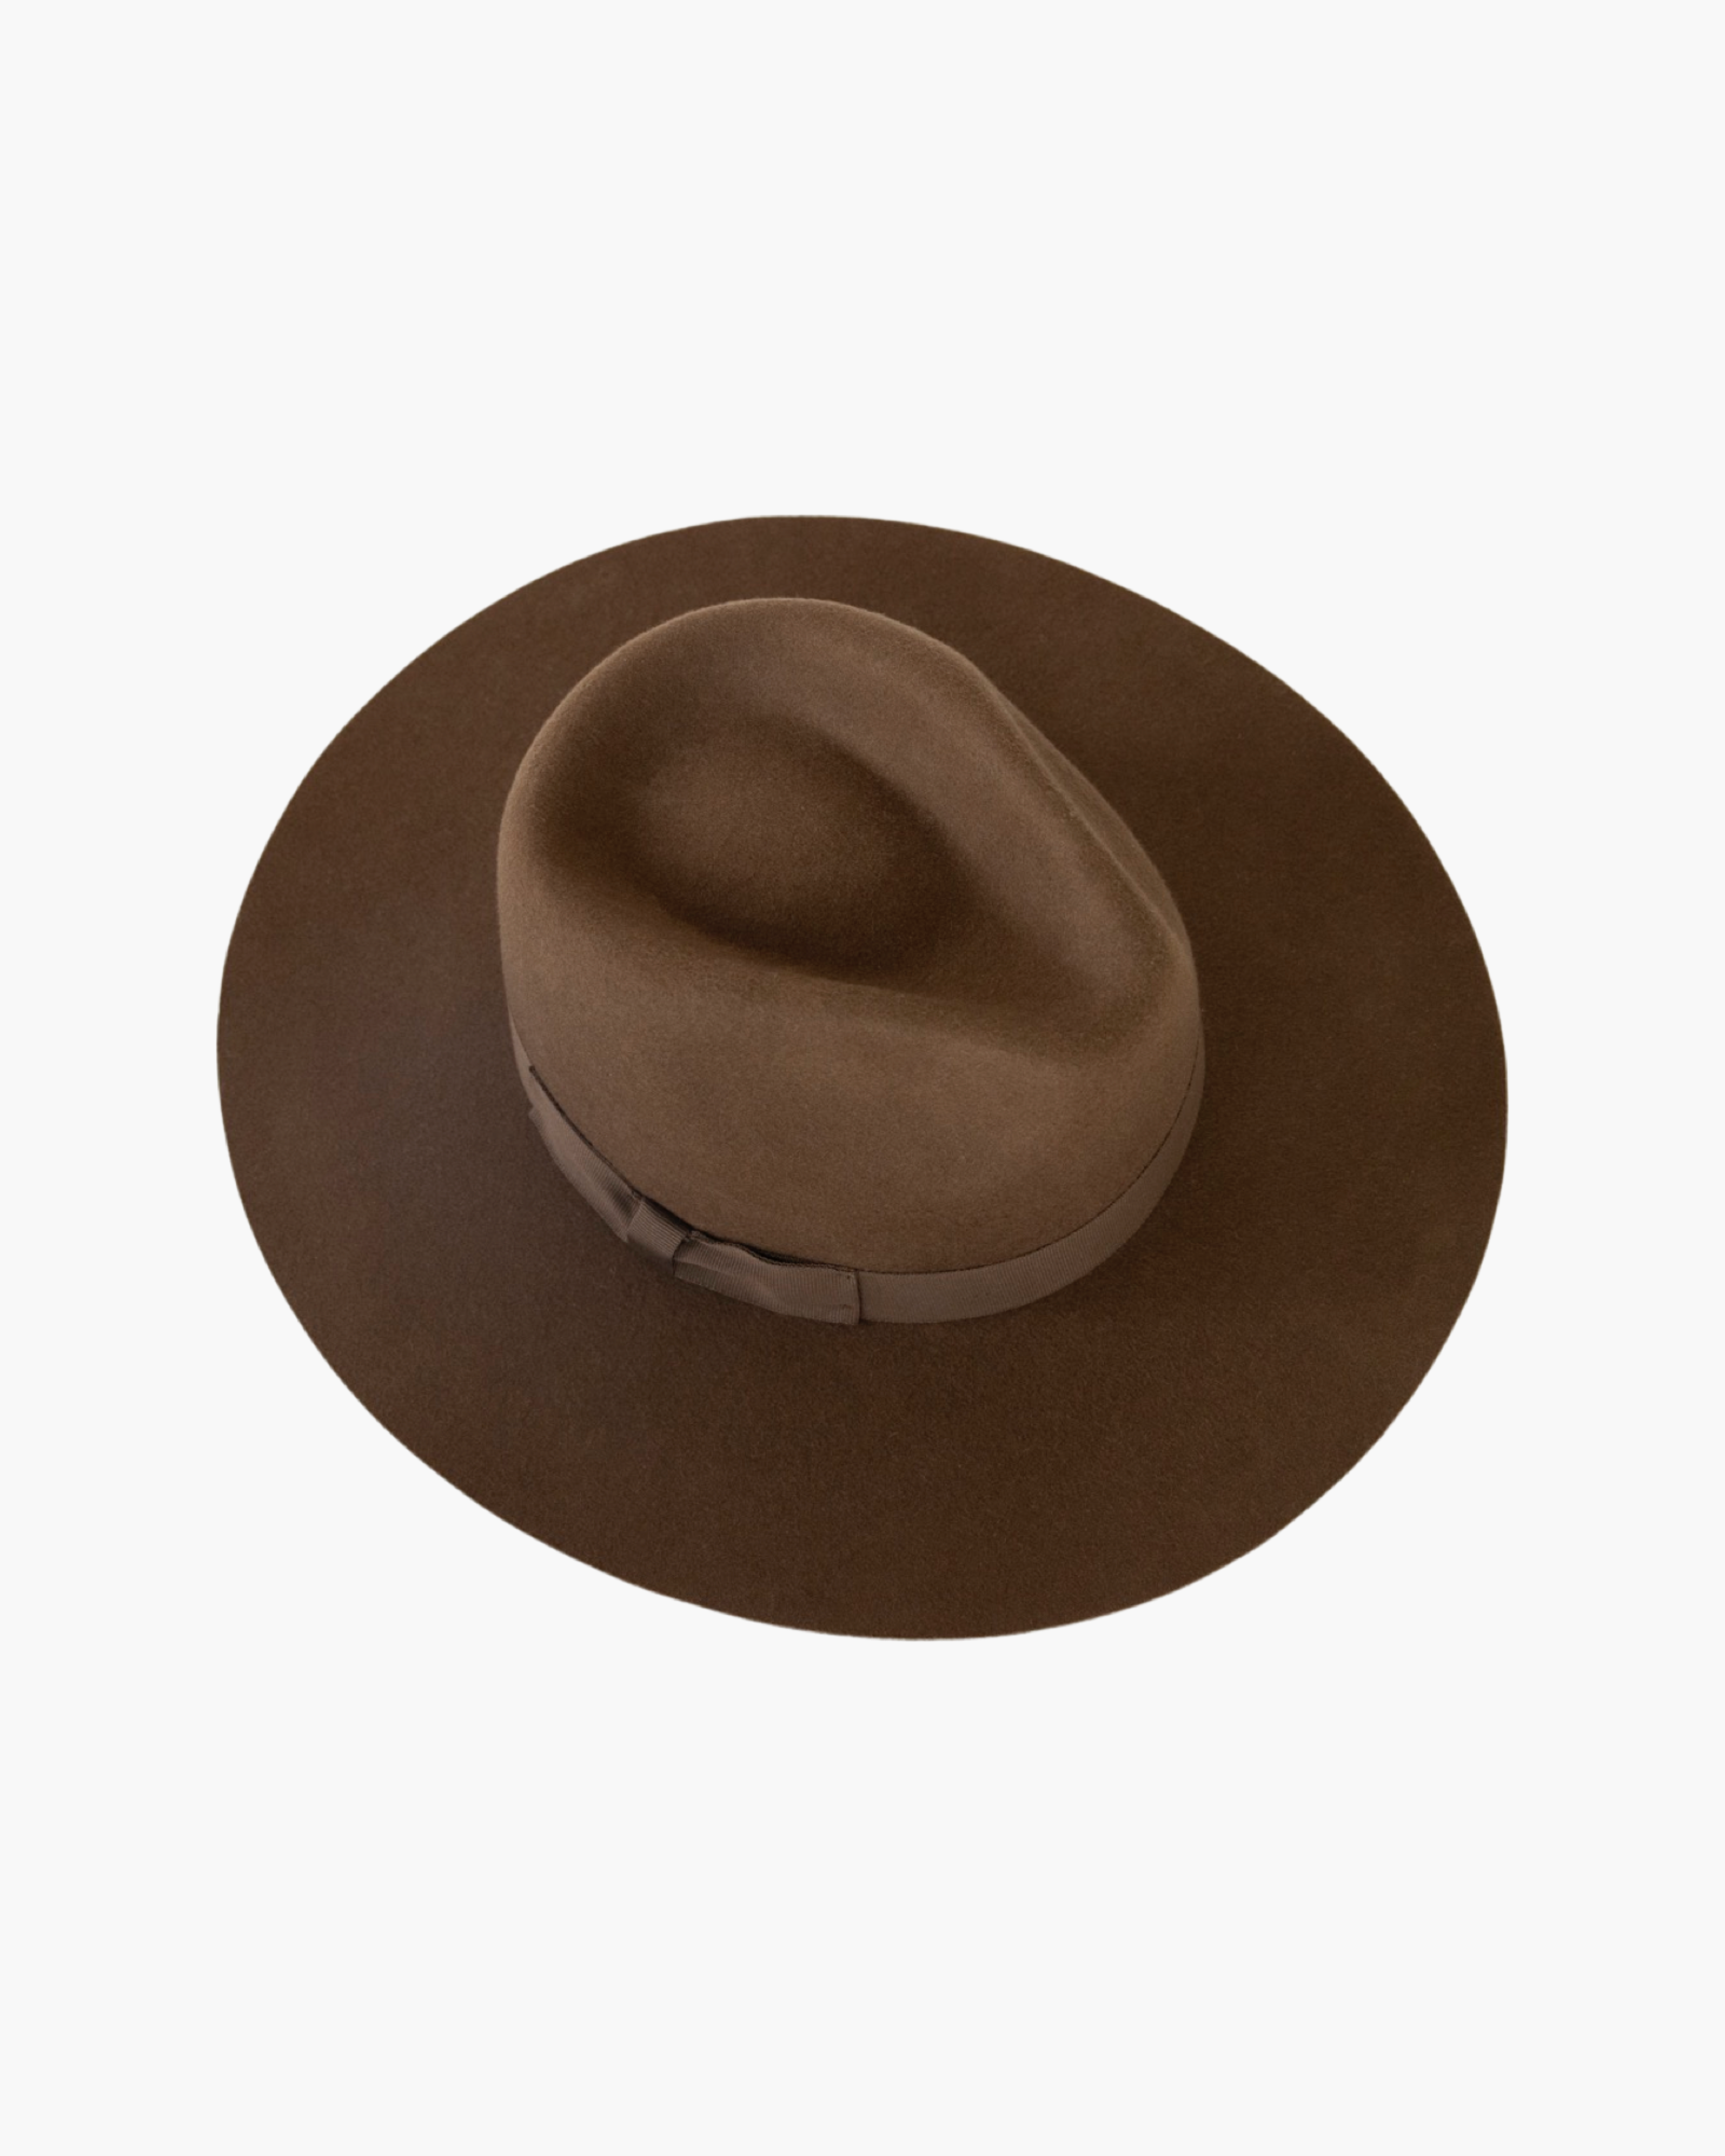 Rancher Wide Brim Hat - Chocolate